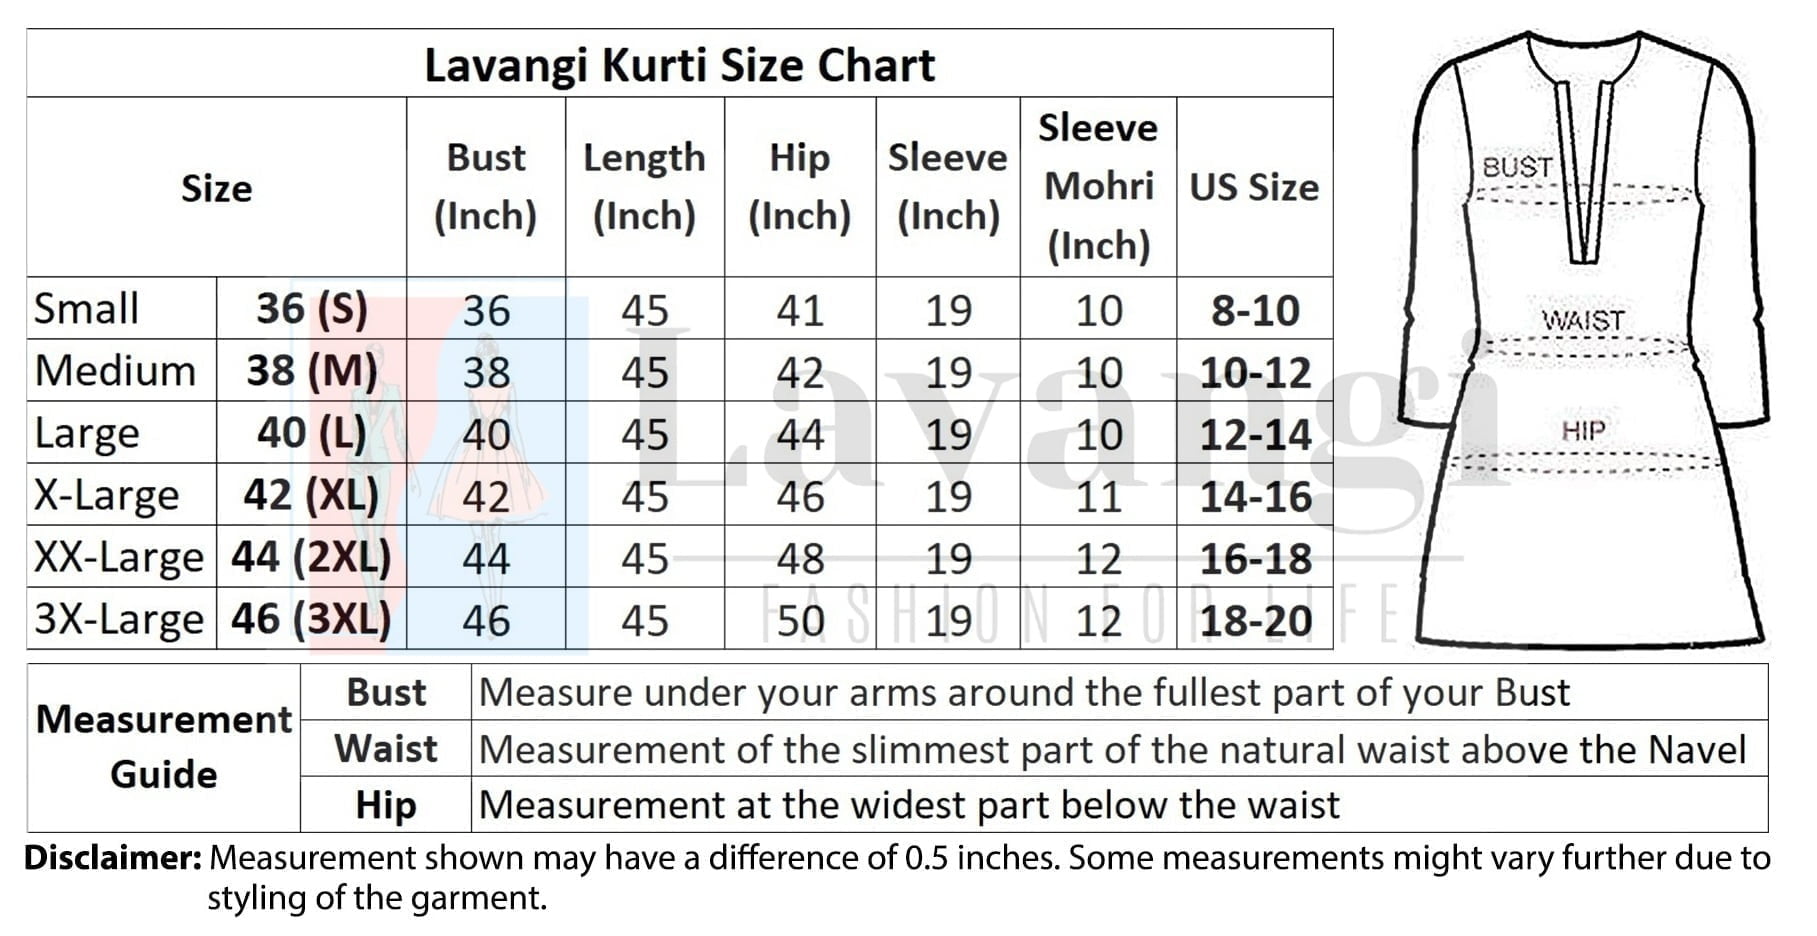 Size Chart of Lavangi Kurti